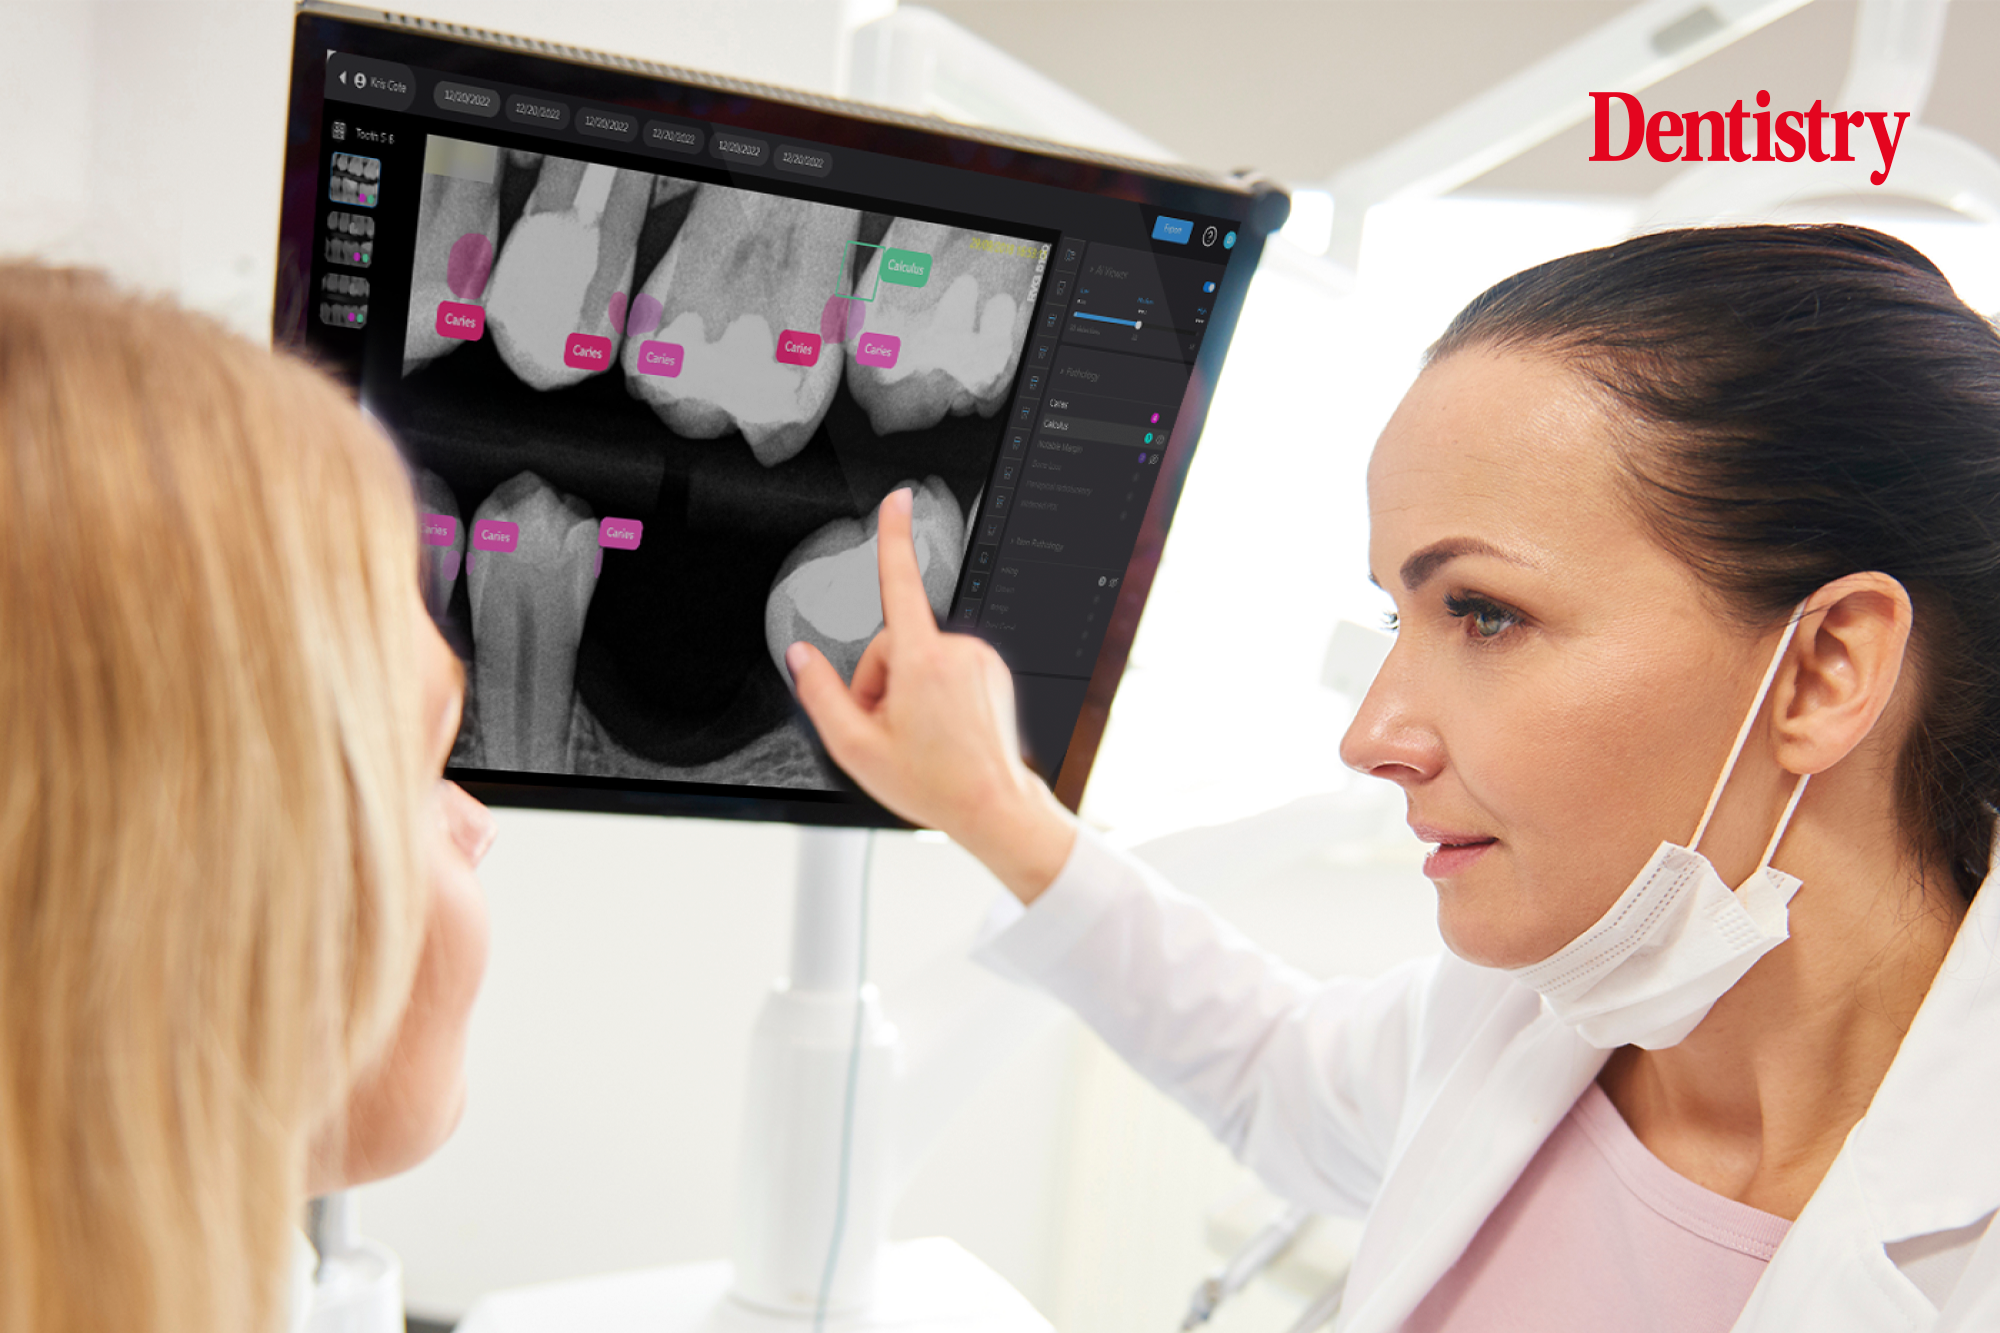 AI in dental imaging